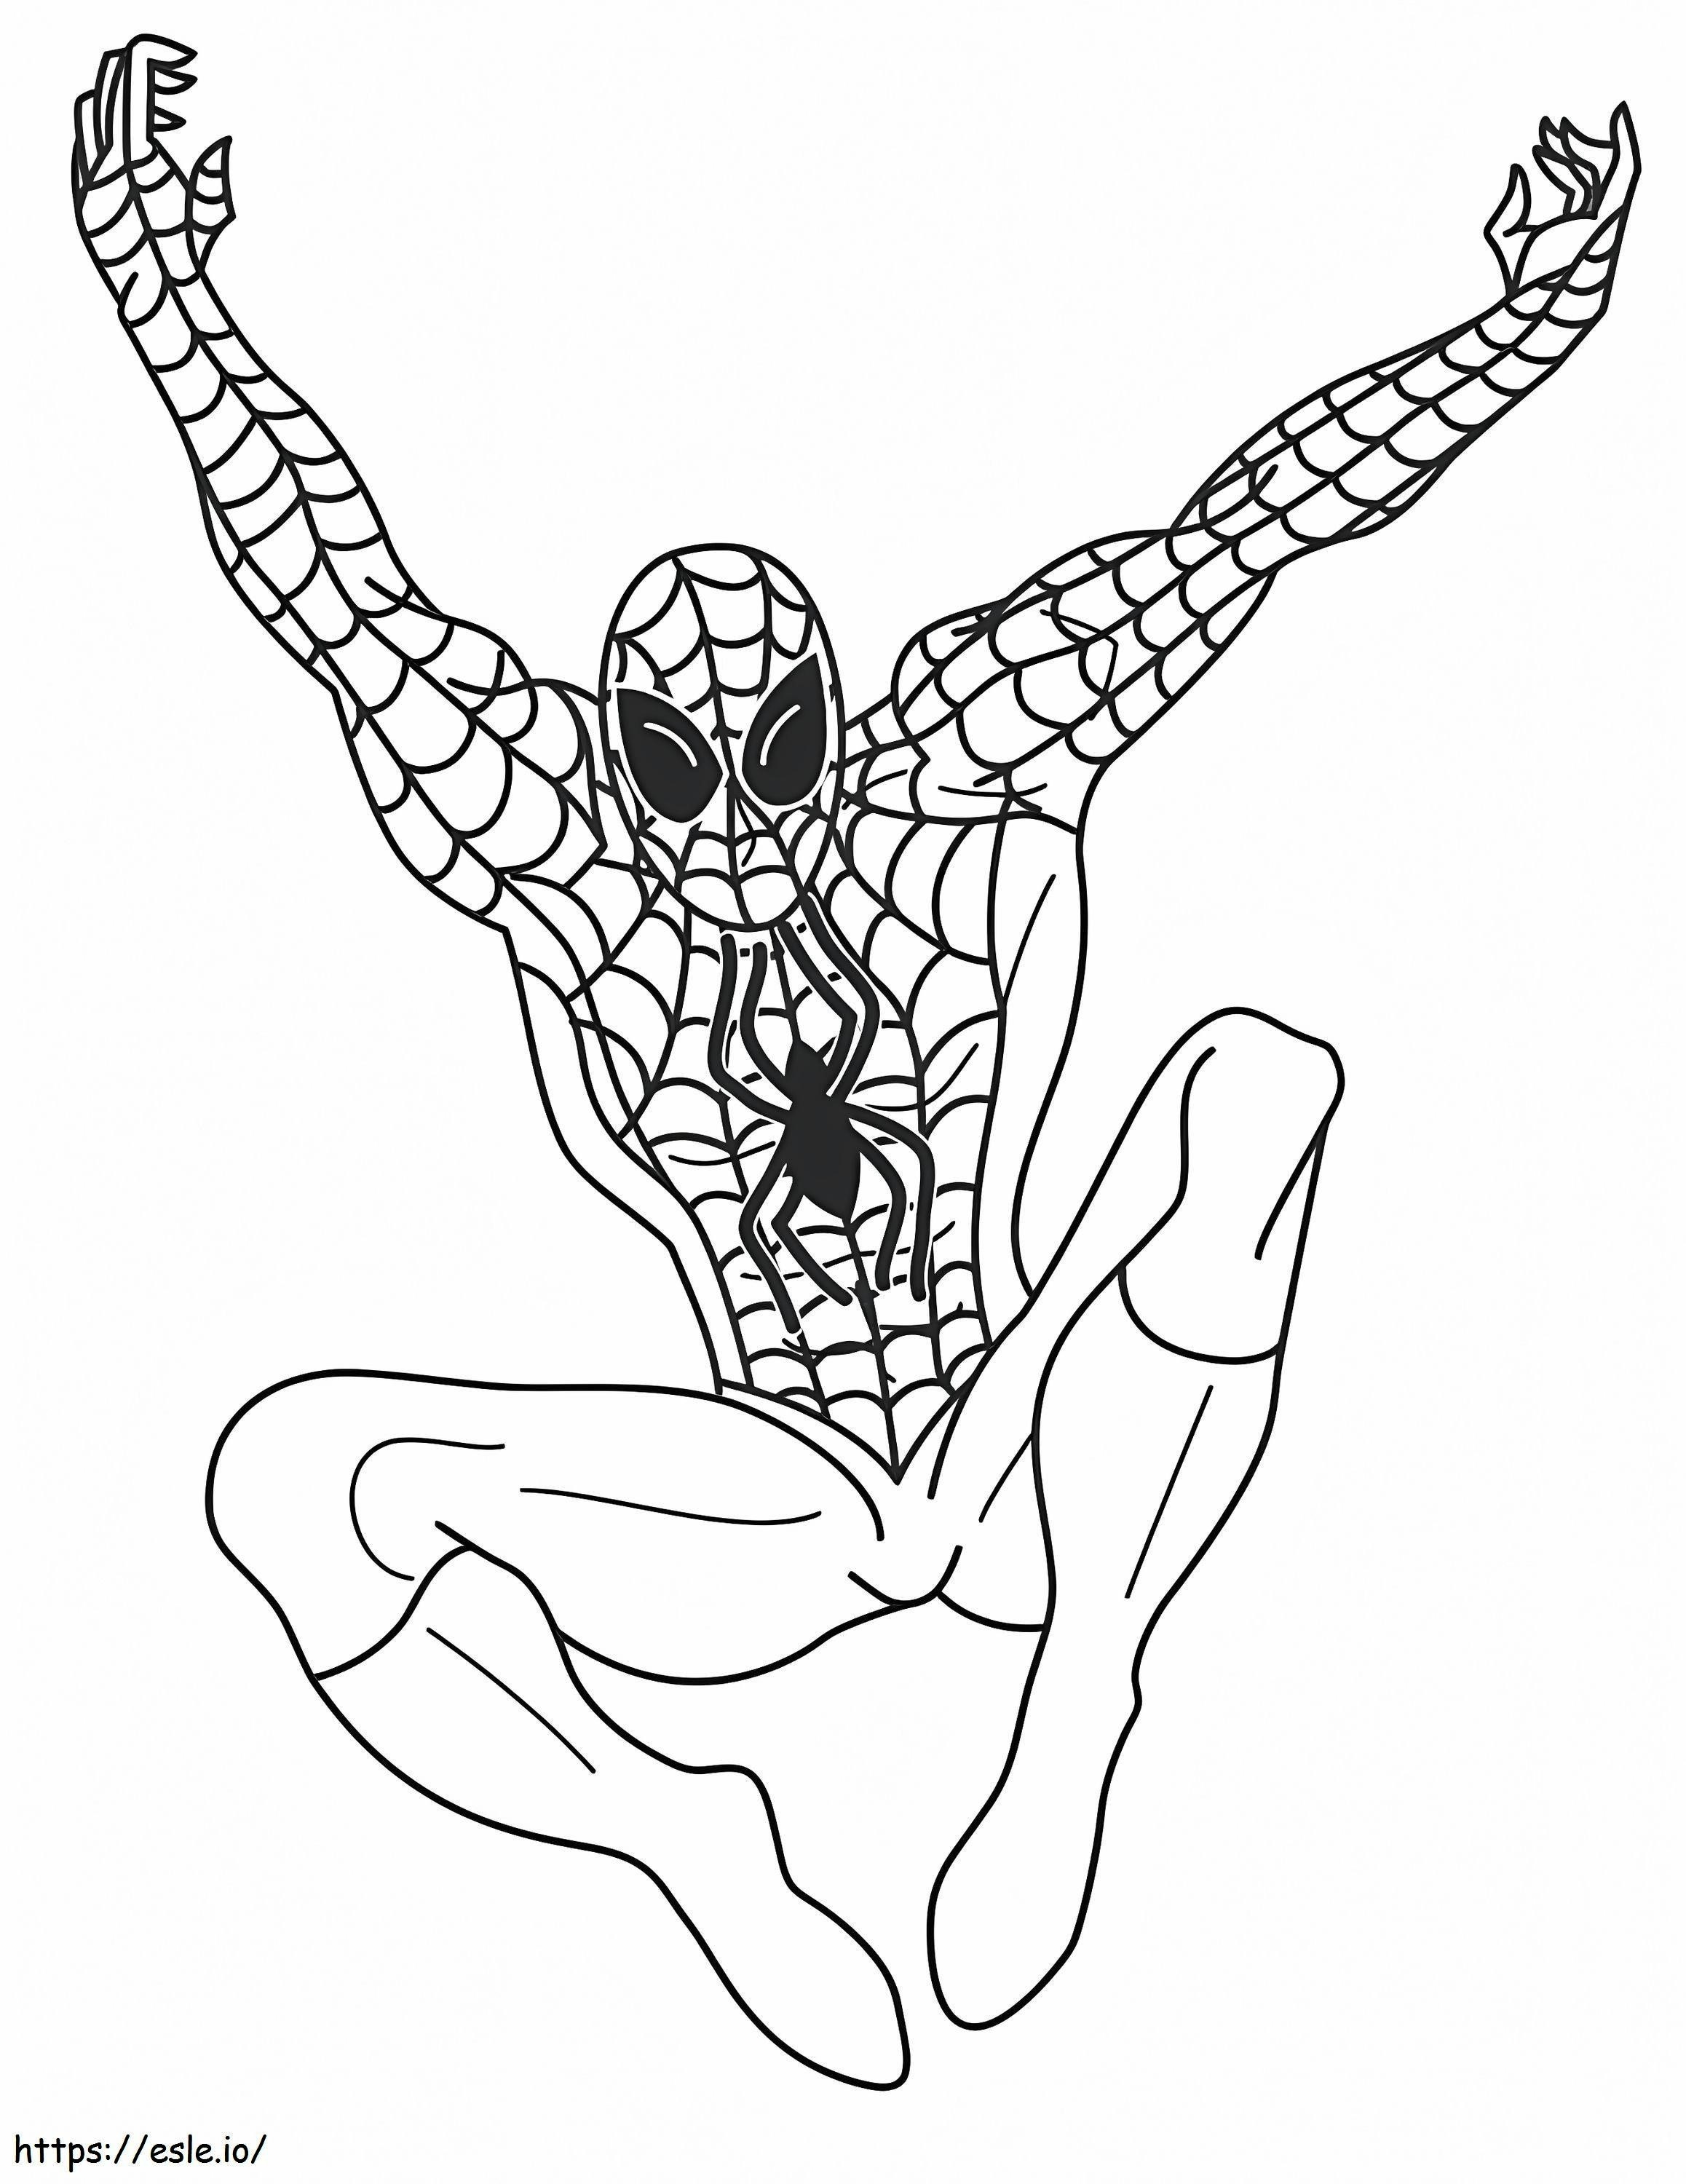 Coloriage Joyeux Spiderman à imprimer dessin